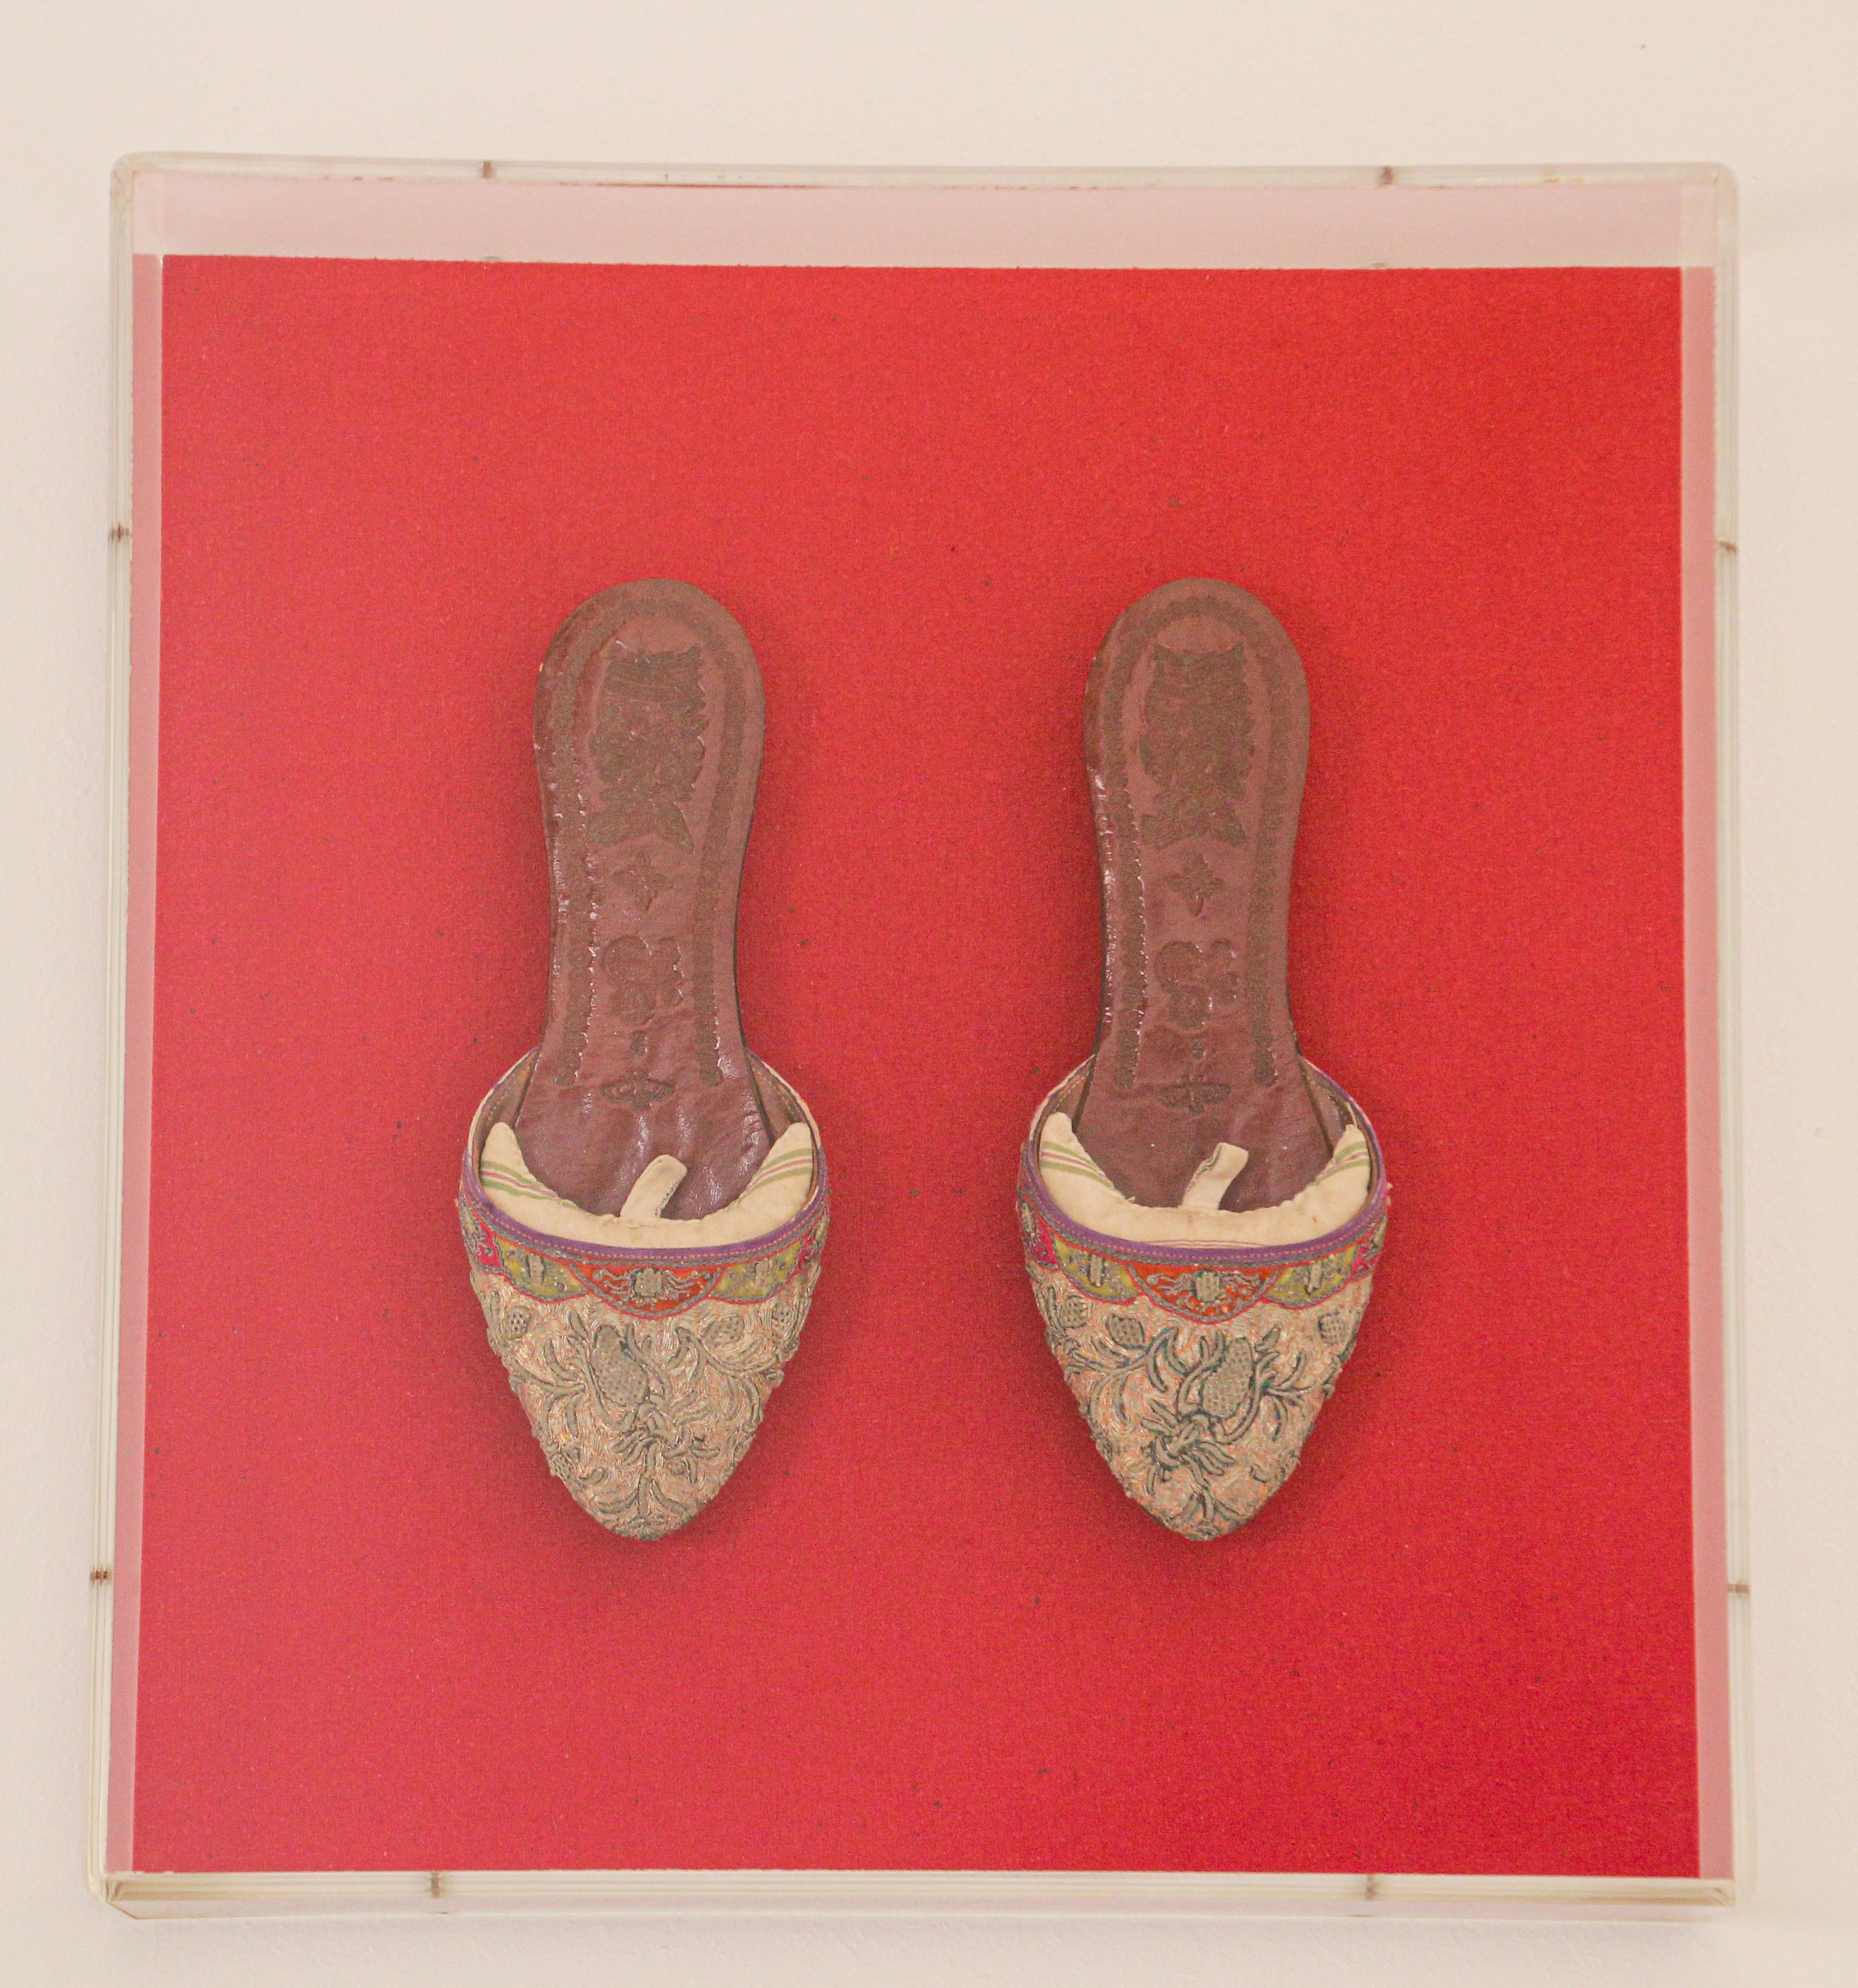 Ein Paar asiatische chinesische Schuhe aus Leder und Seide, bestickt und mit Goldfäden verziert, eingerahmt in einer Lucite-Box.
Exquisites Paar antiker Schuhe, montiert und präsentiert auf rotem Hintergrund.